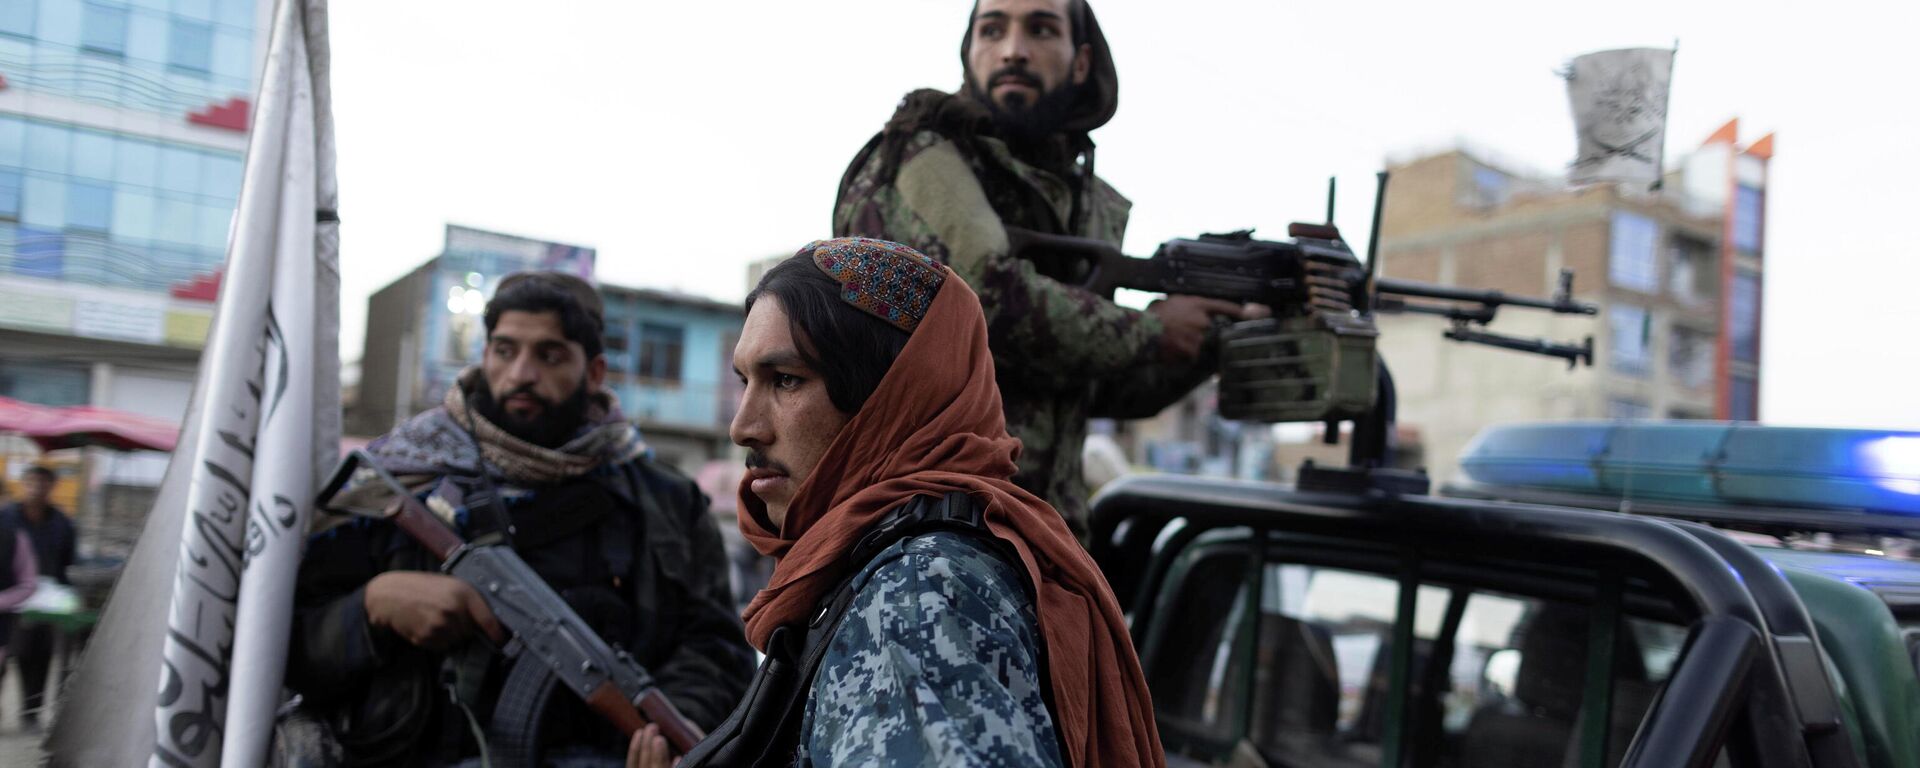 Talibanes vigilan la seguridad en Kabul, Afganistán - Sputnik Mundo, 1920, 24.11.2021